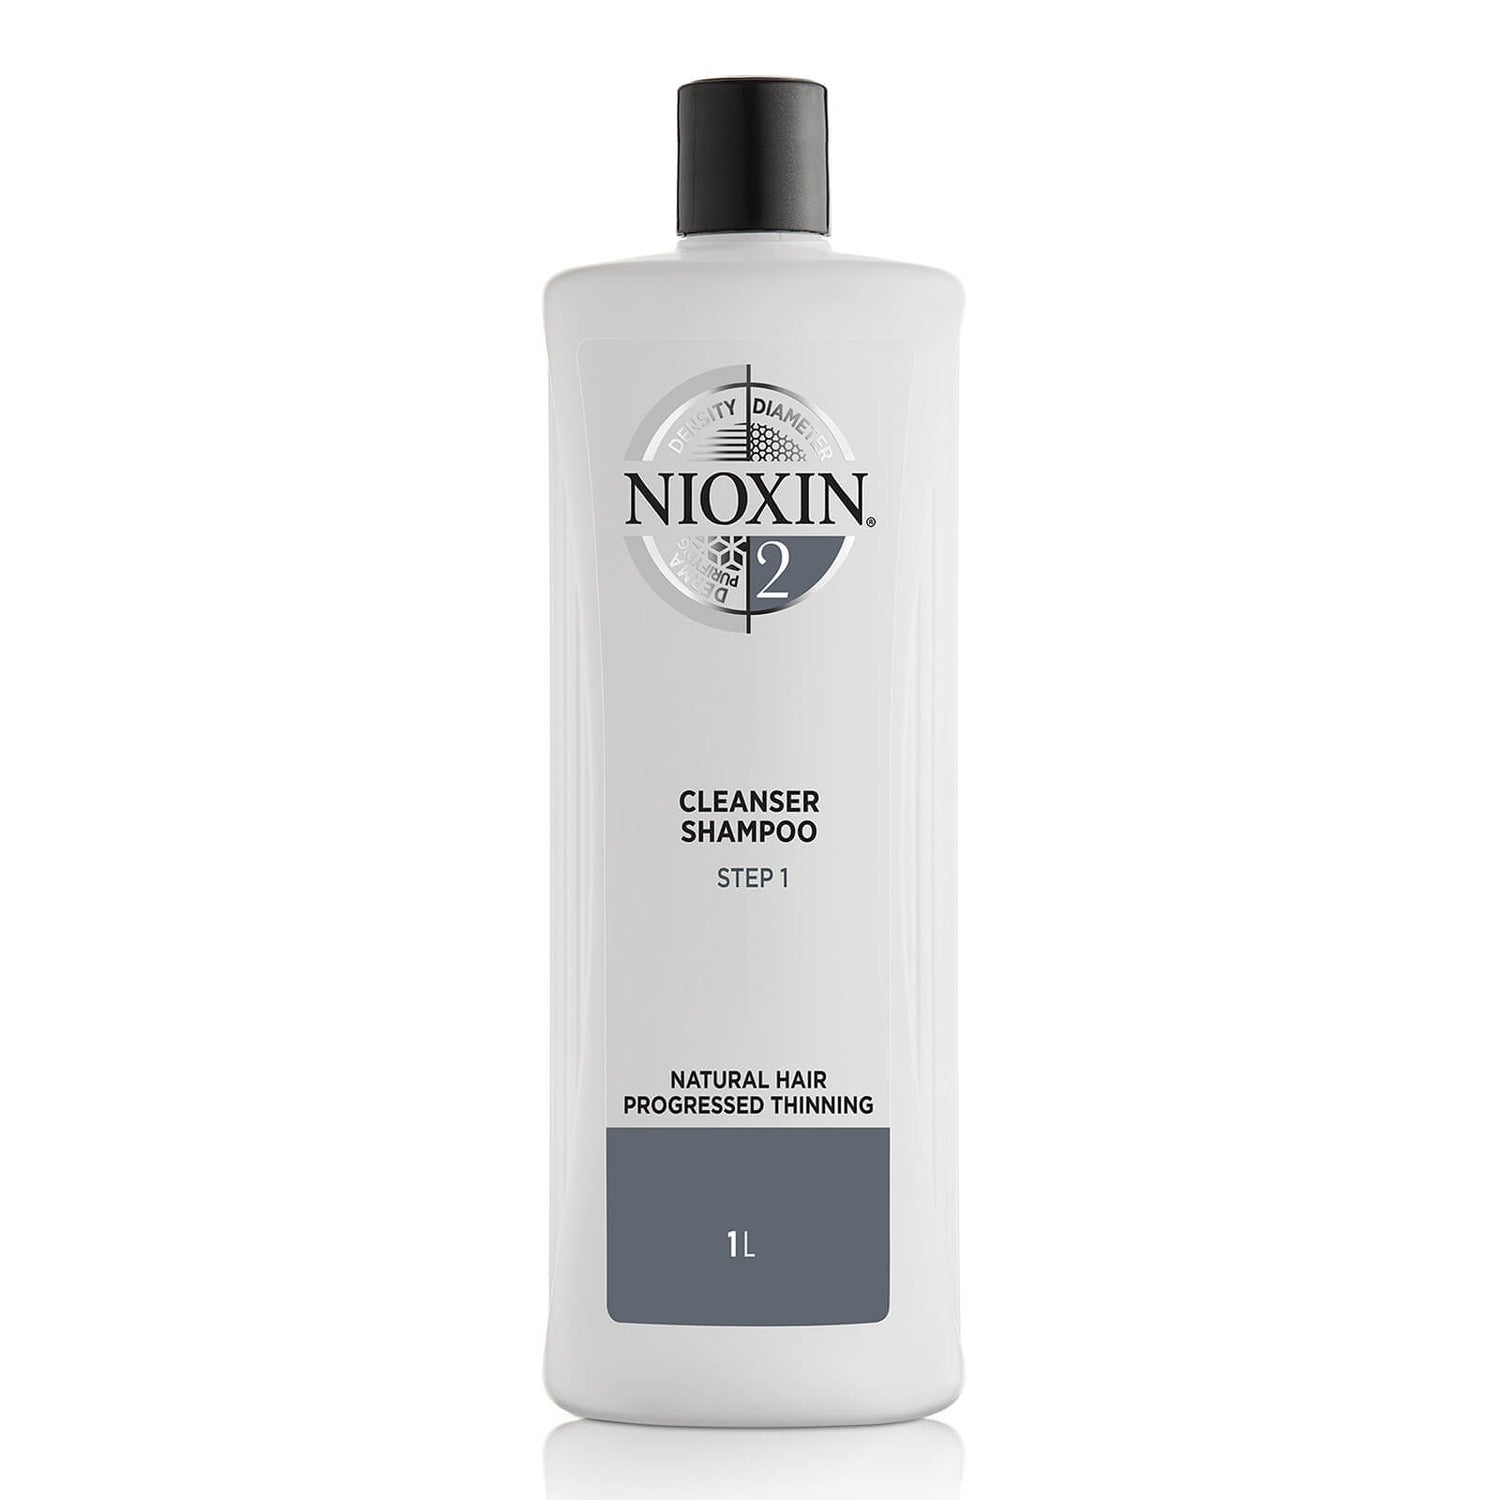 NIOXIN 3-Part System 2 Champô de Limpeza para Cabelos Naturais com Desbaste Progressivo 1000ml